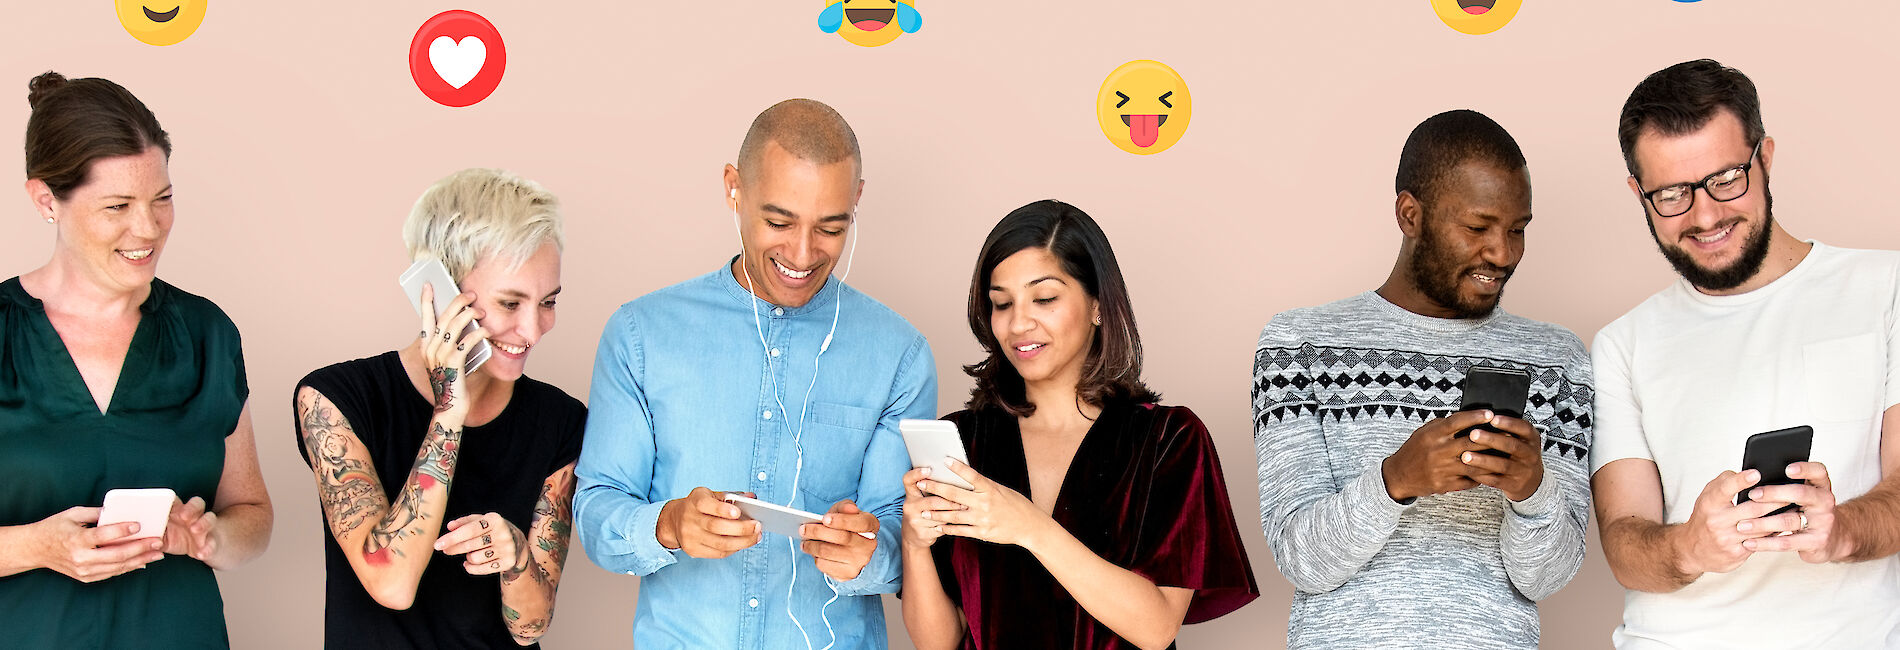 Männer und Frauen mit Smartphones und eingeblendeten Emojis